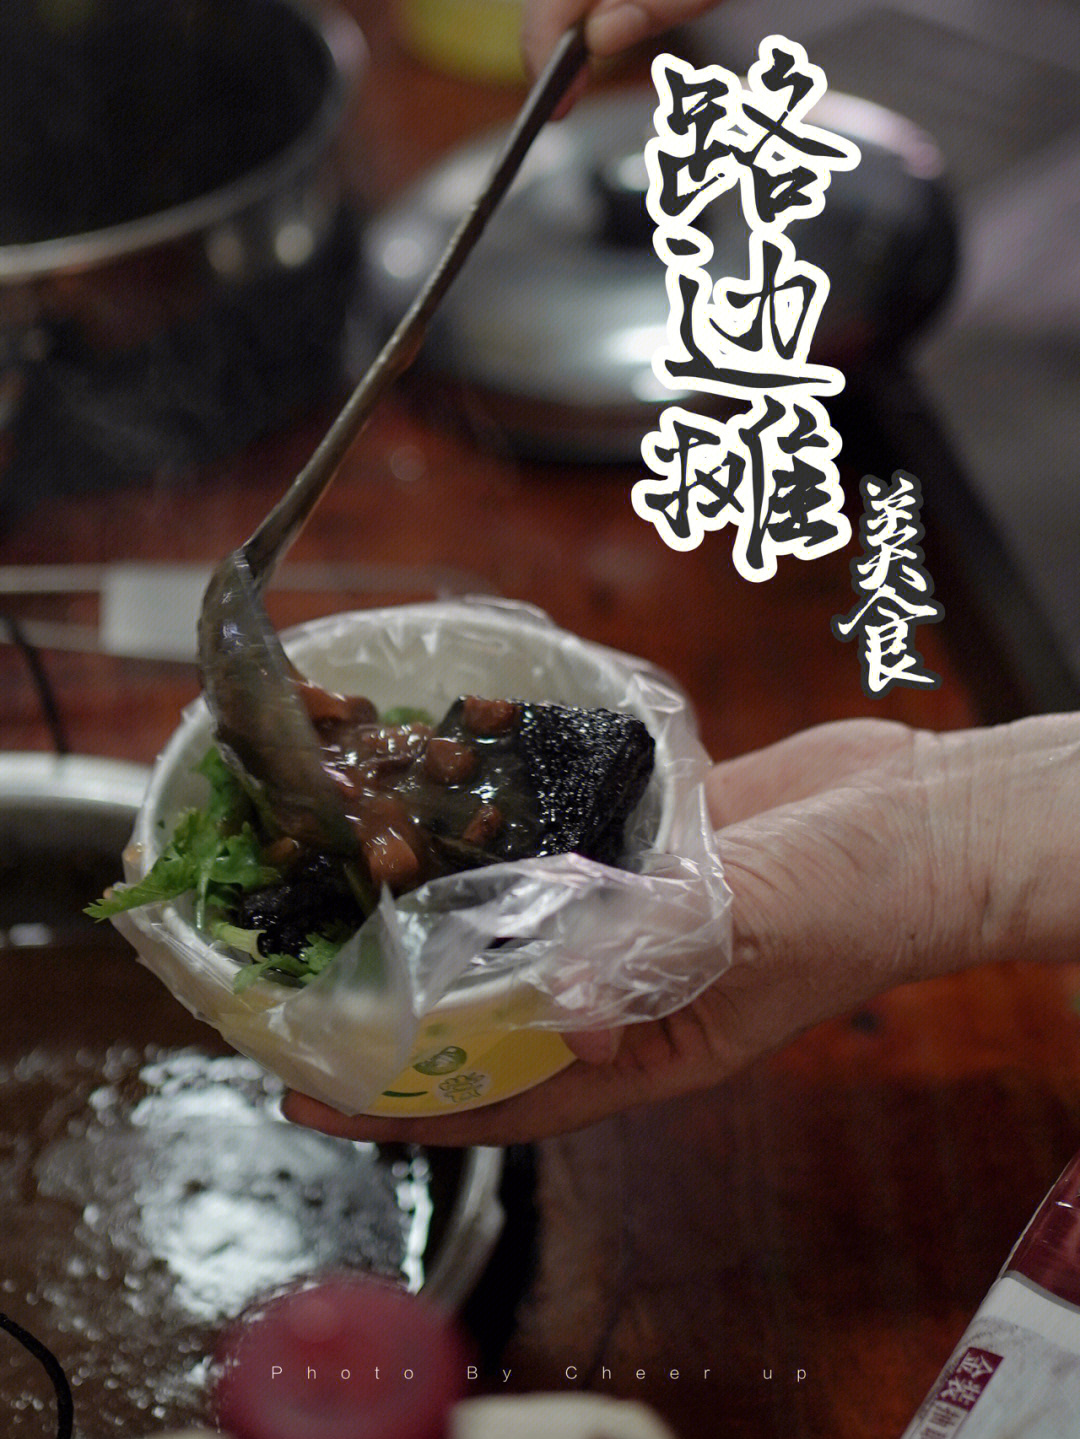 温州欧洲城小板车浇汁臭豆腐73汤汁满满幸福